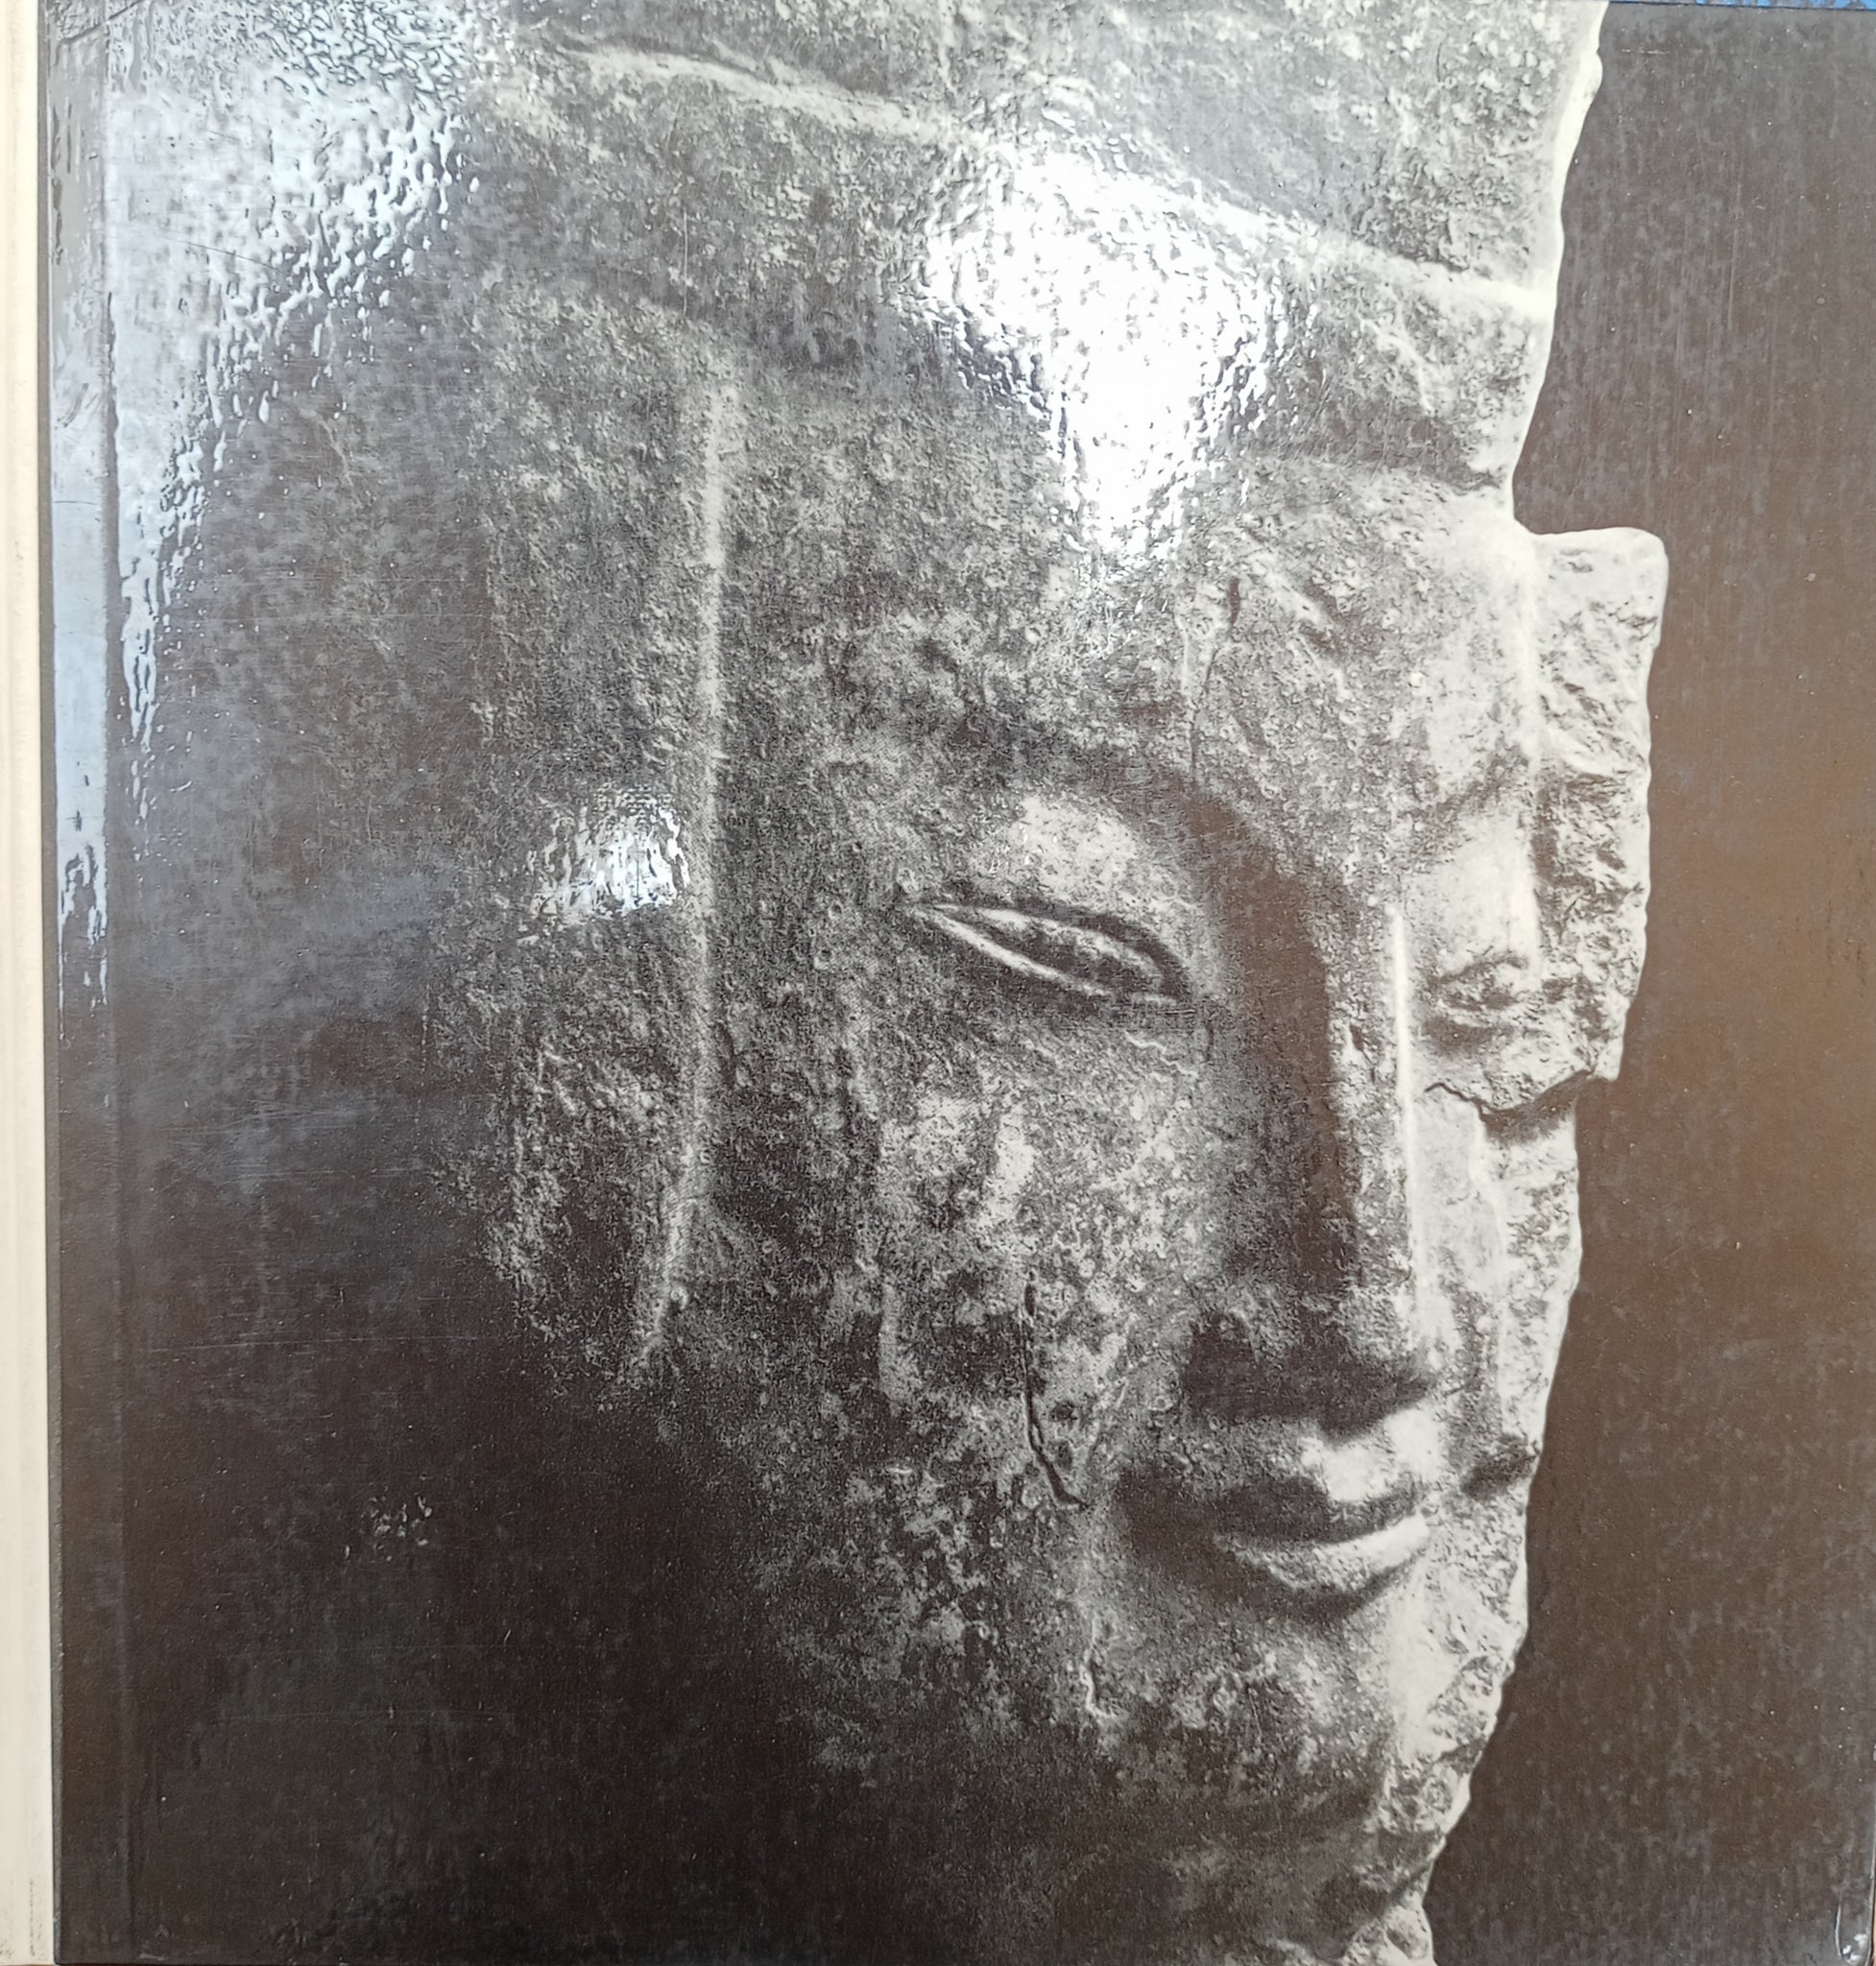 Chinese Sculptures in the von der Heydt Collection.